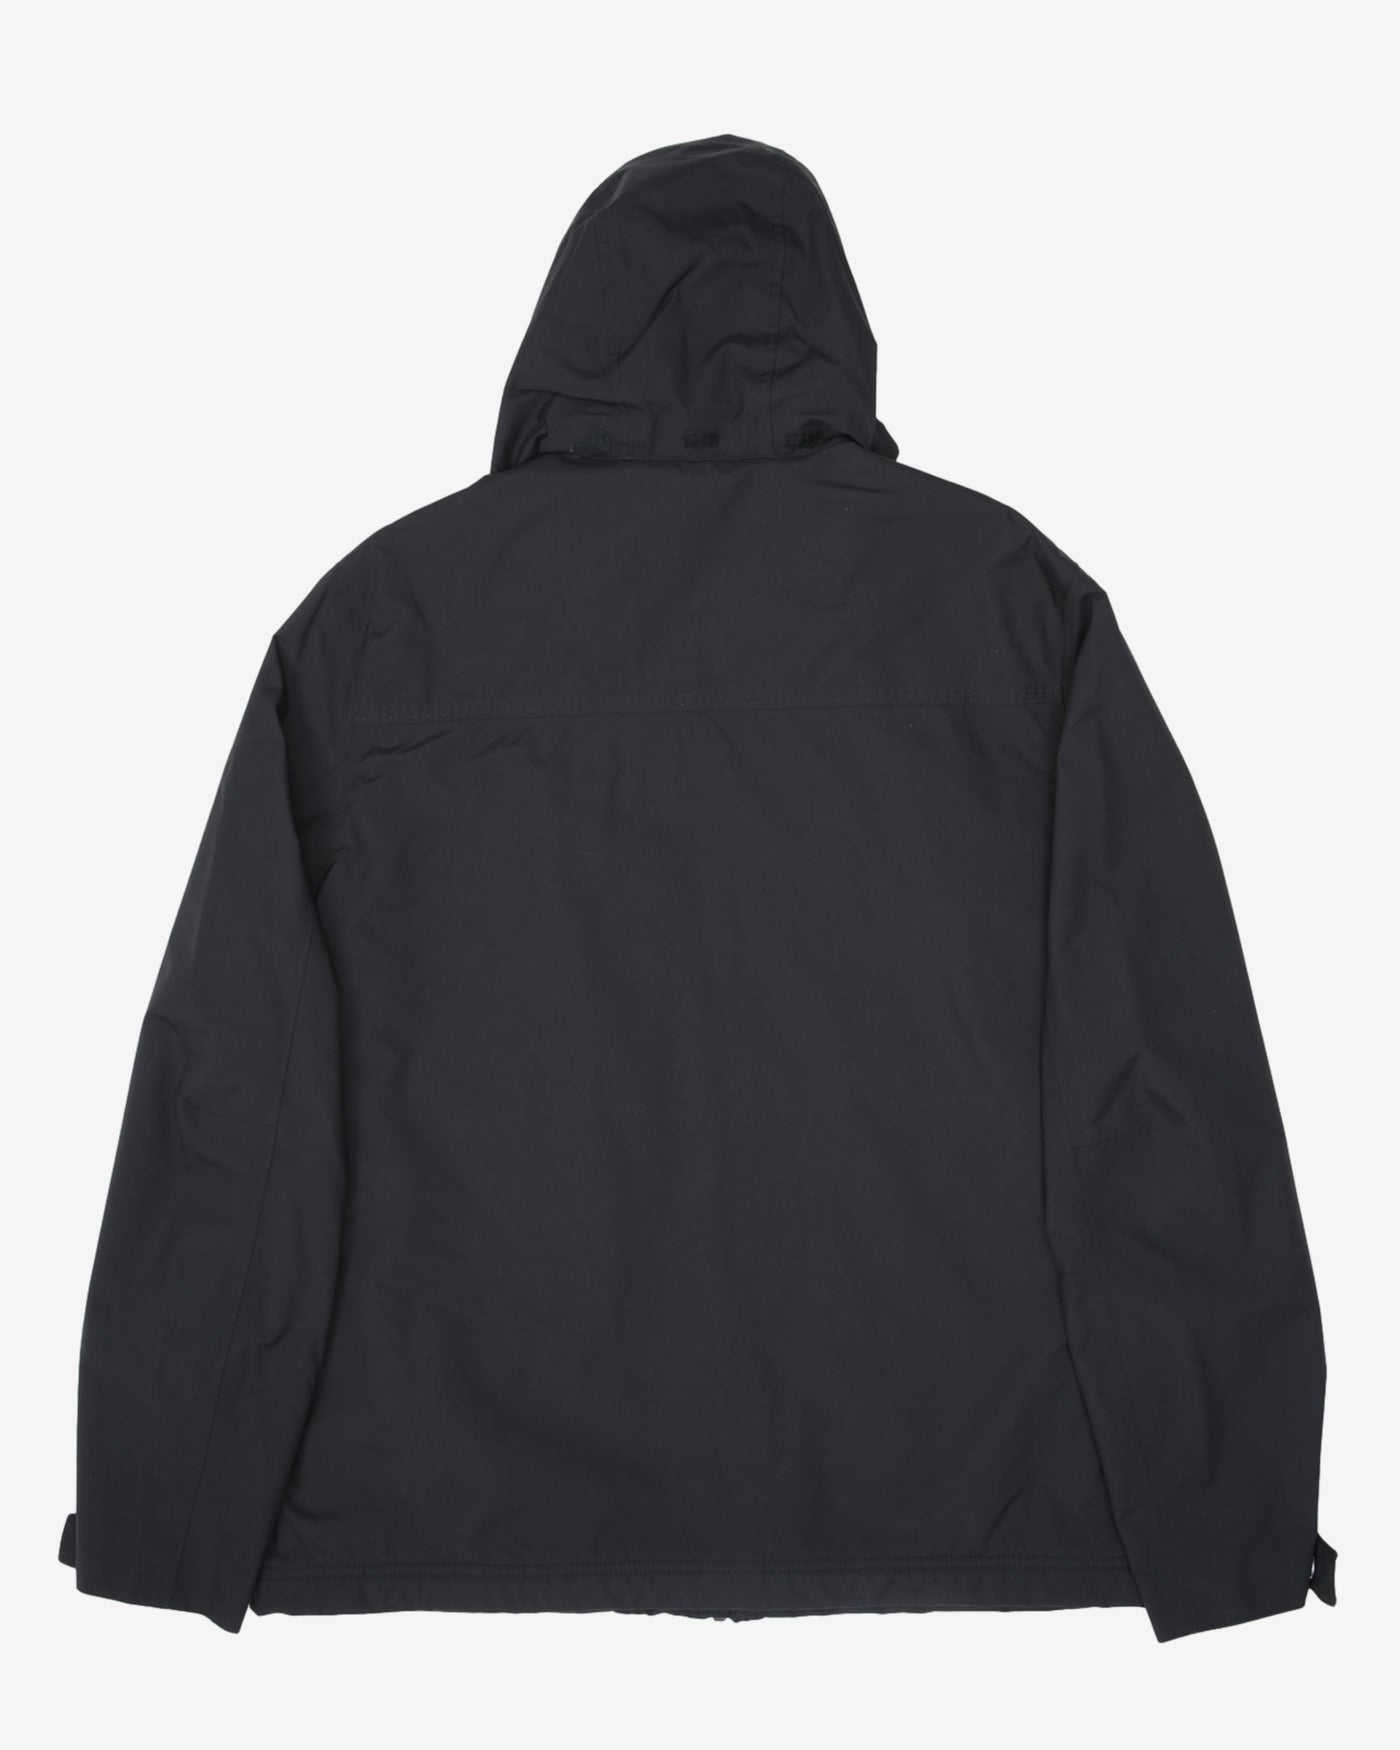 Timberland Full-Zip Black Waterproof Hooded Rain Jacket - L